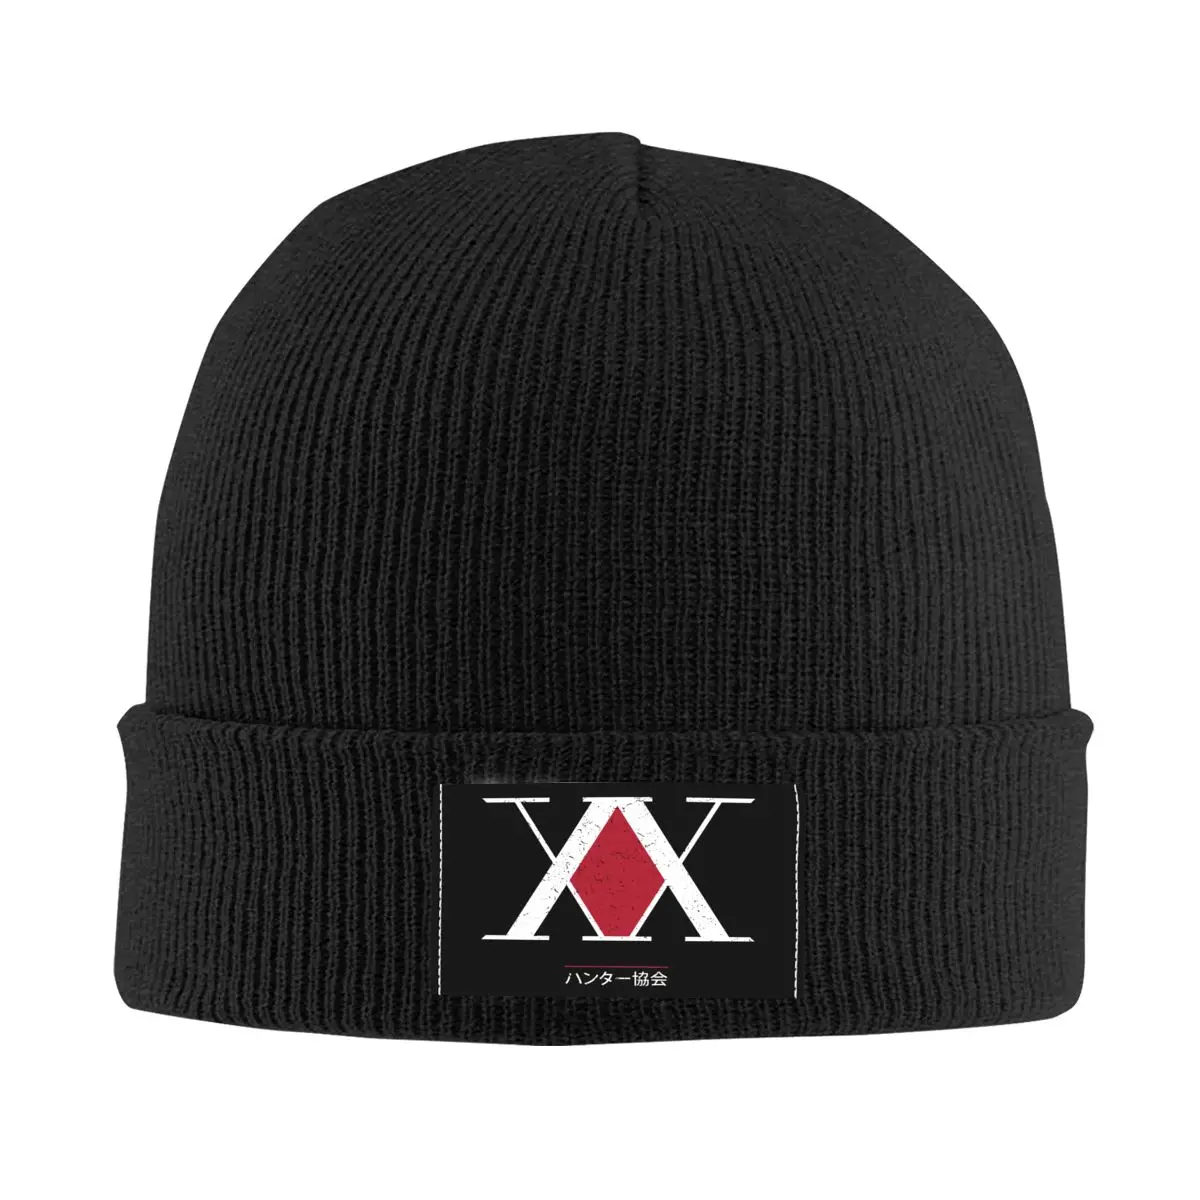 Hunter X Hunter Association Bonnet Hat Knitted Hat Men Women Hip Hop Unisex Adult Warm Winter Skullies Beanies Caps 1